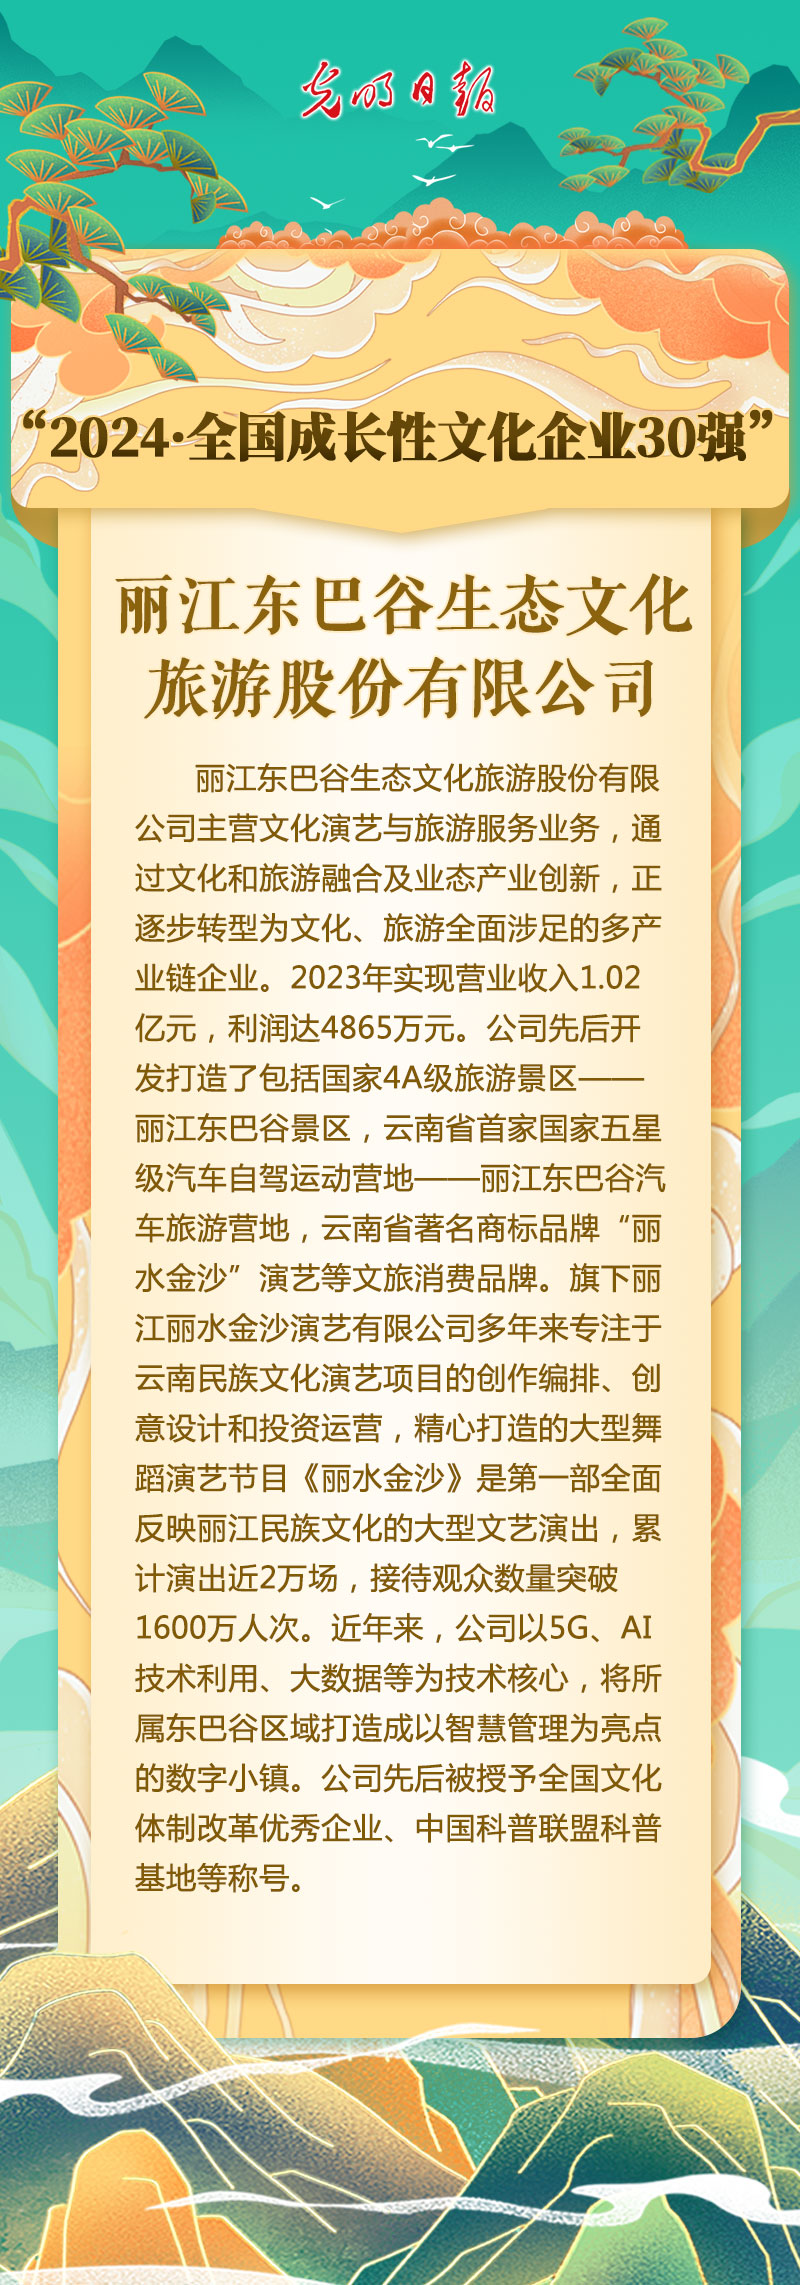 丽江东巴谷生态文化旅游股份有限公司